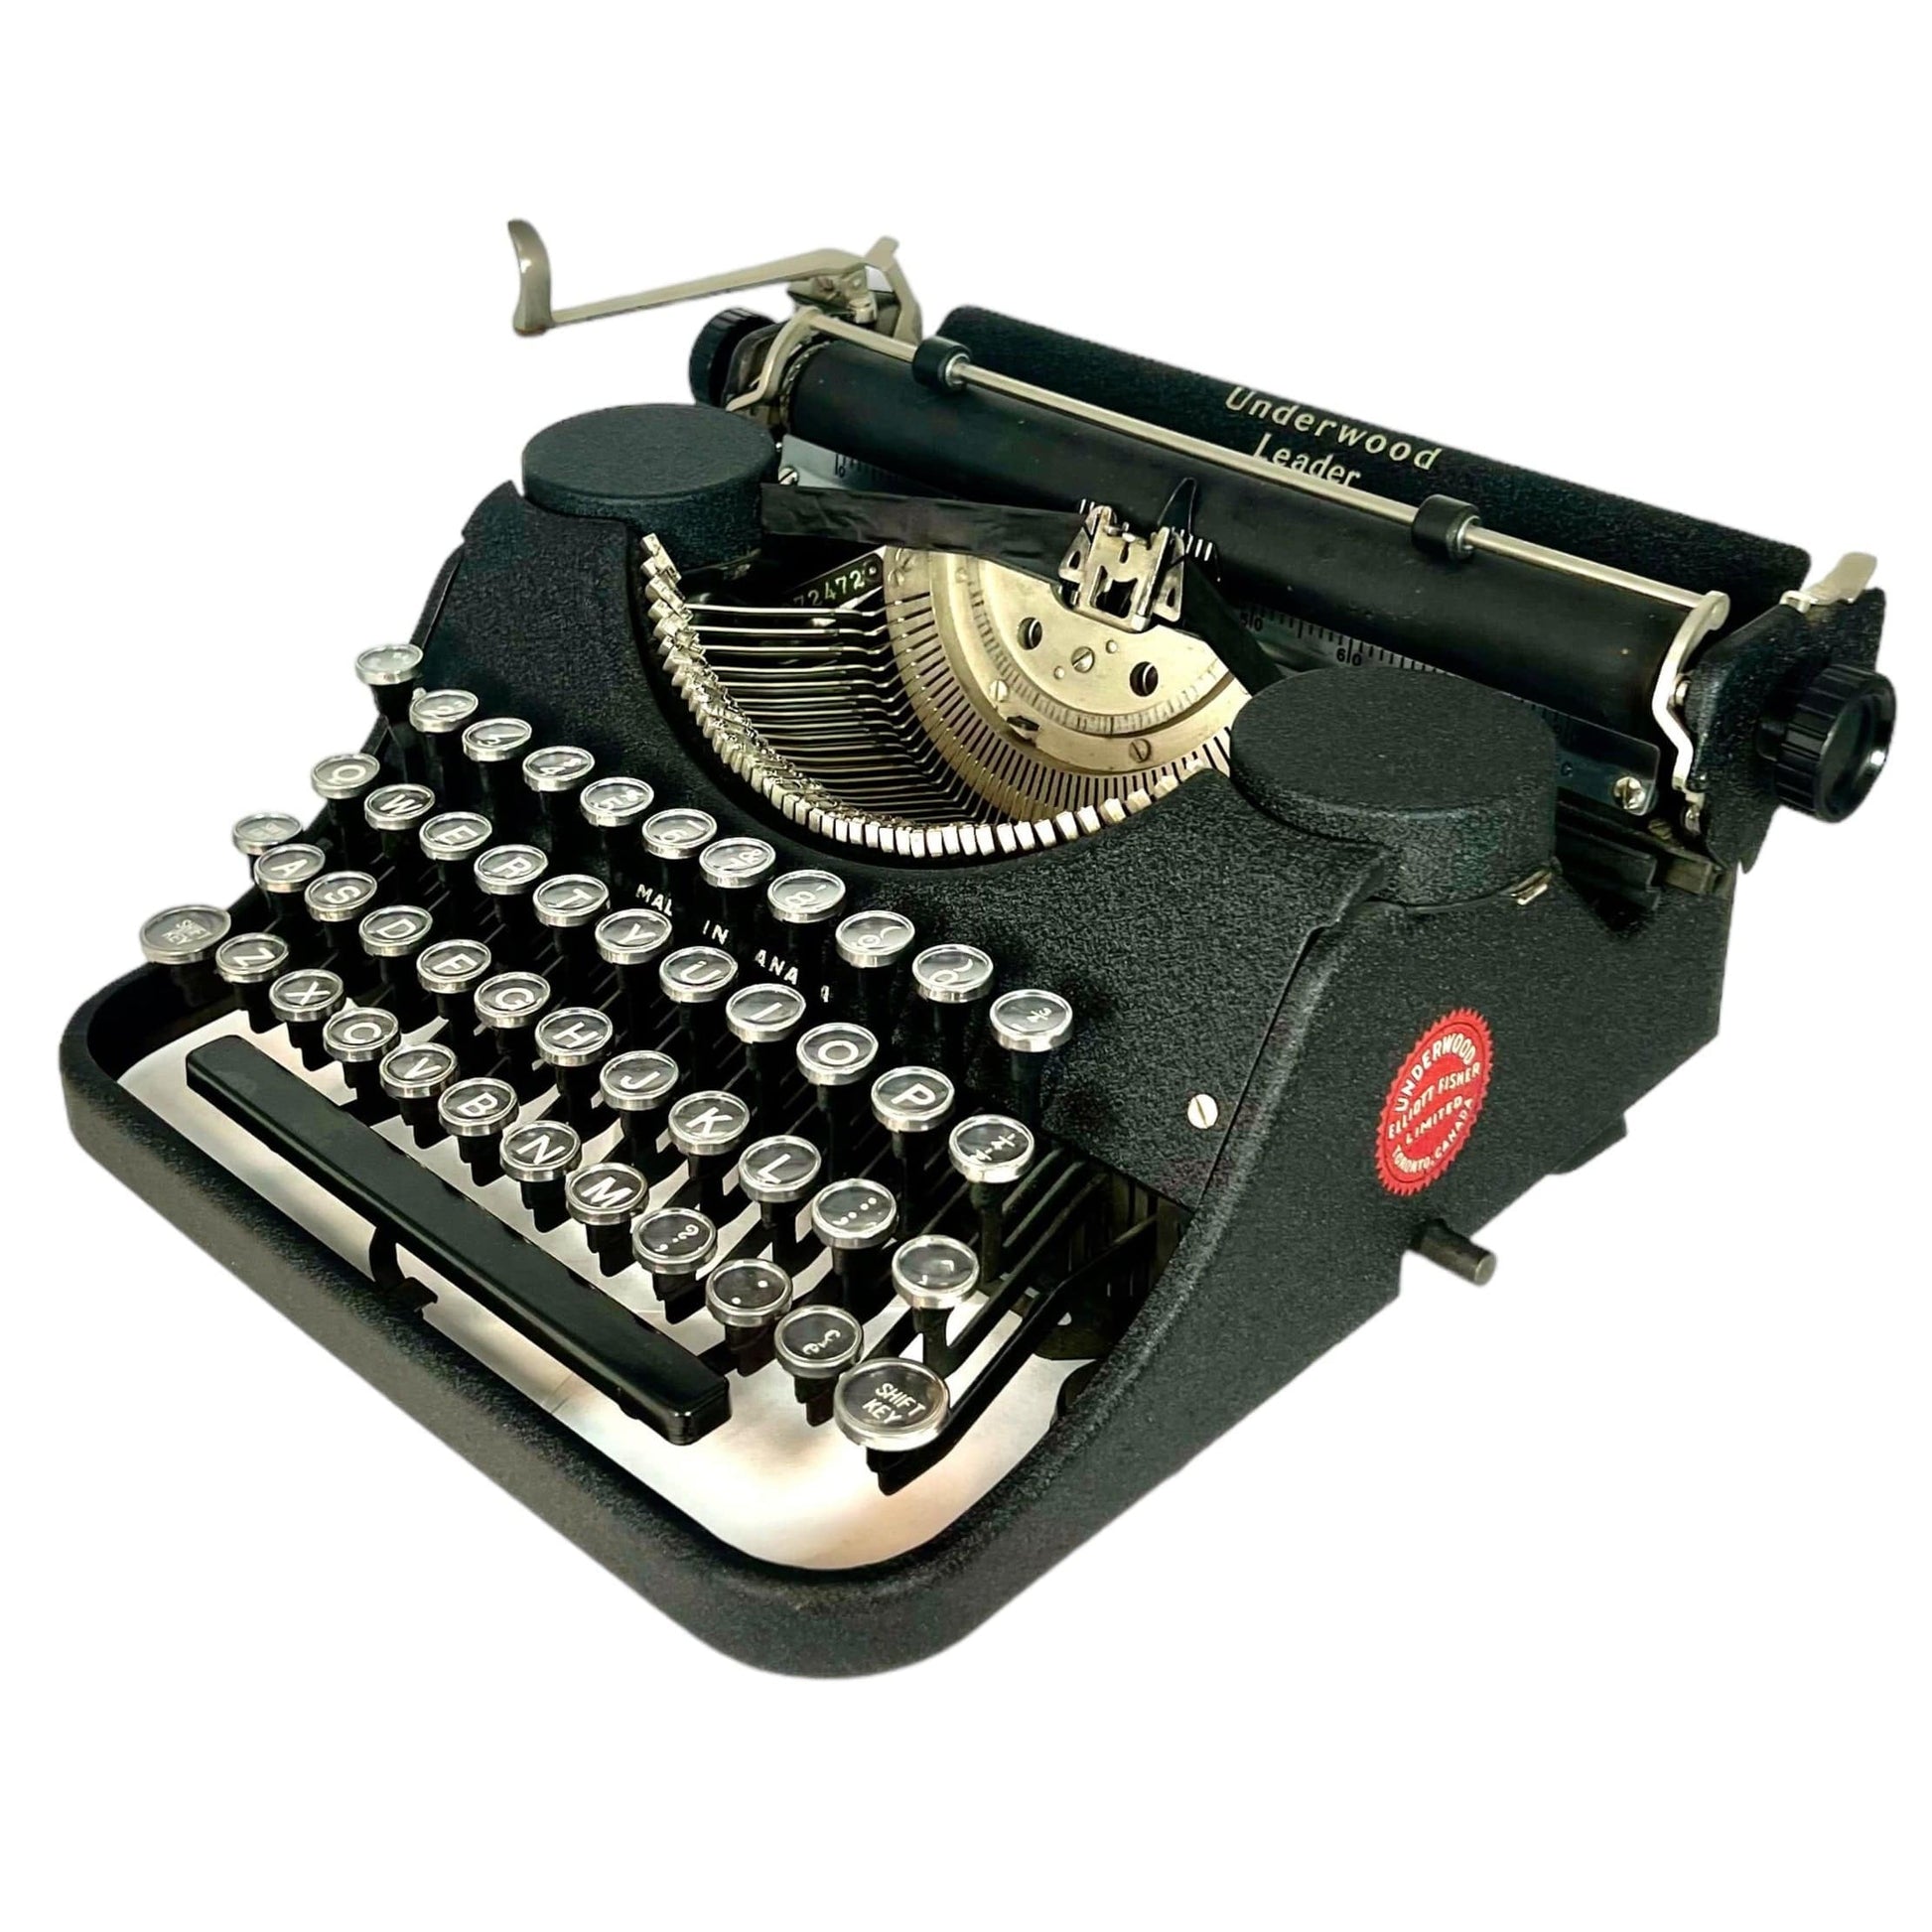 Toronto Typewriters Portable Typewriter Underwood Leader Typewriter